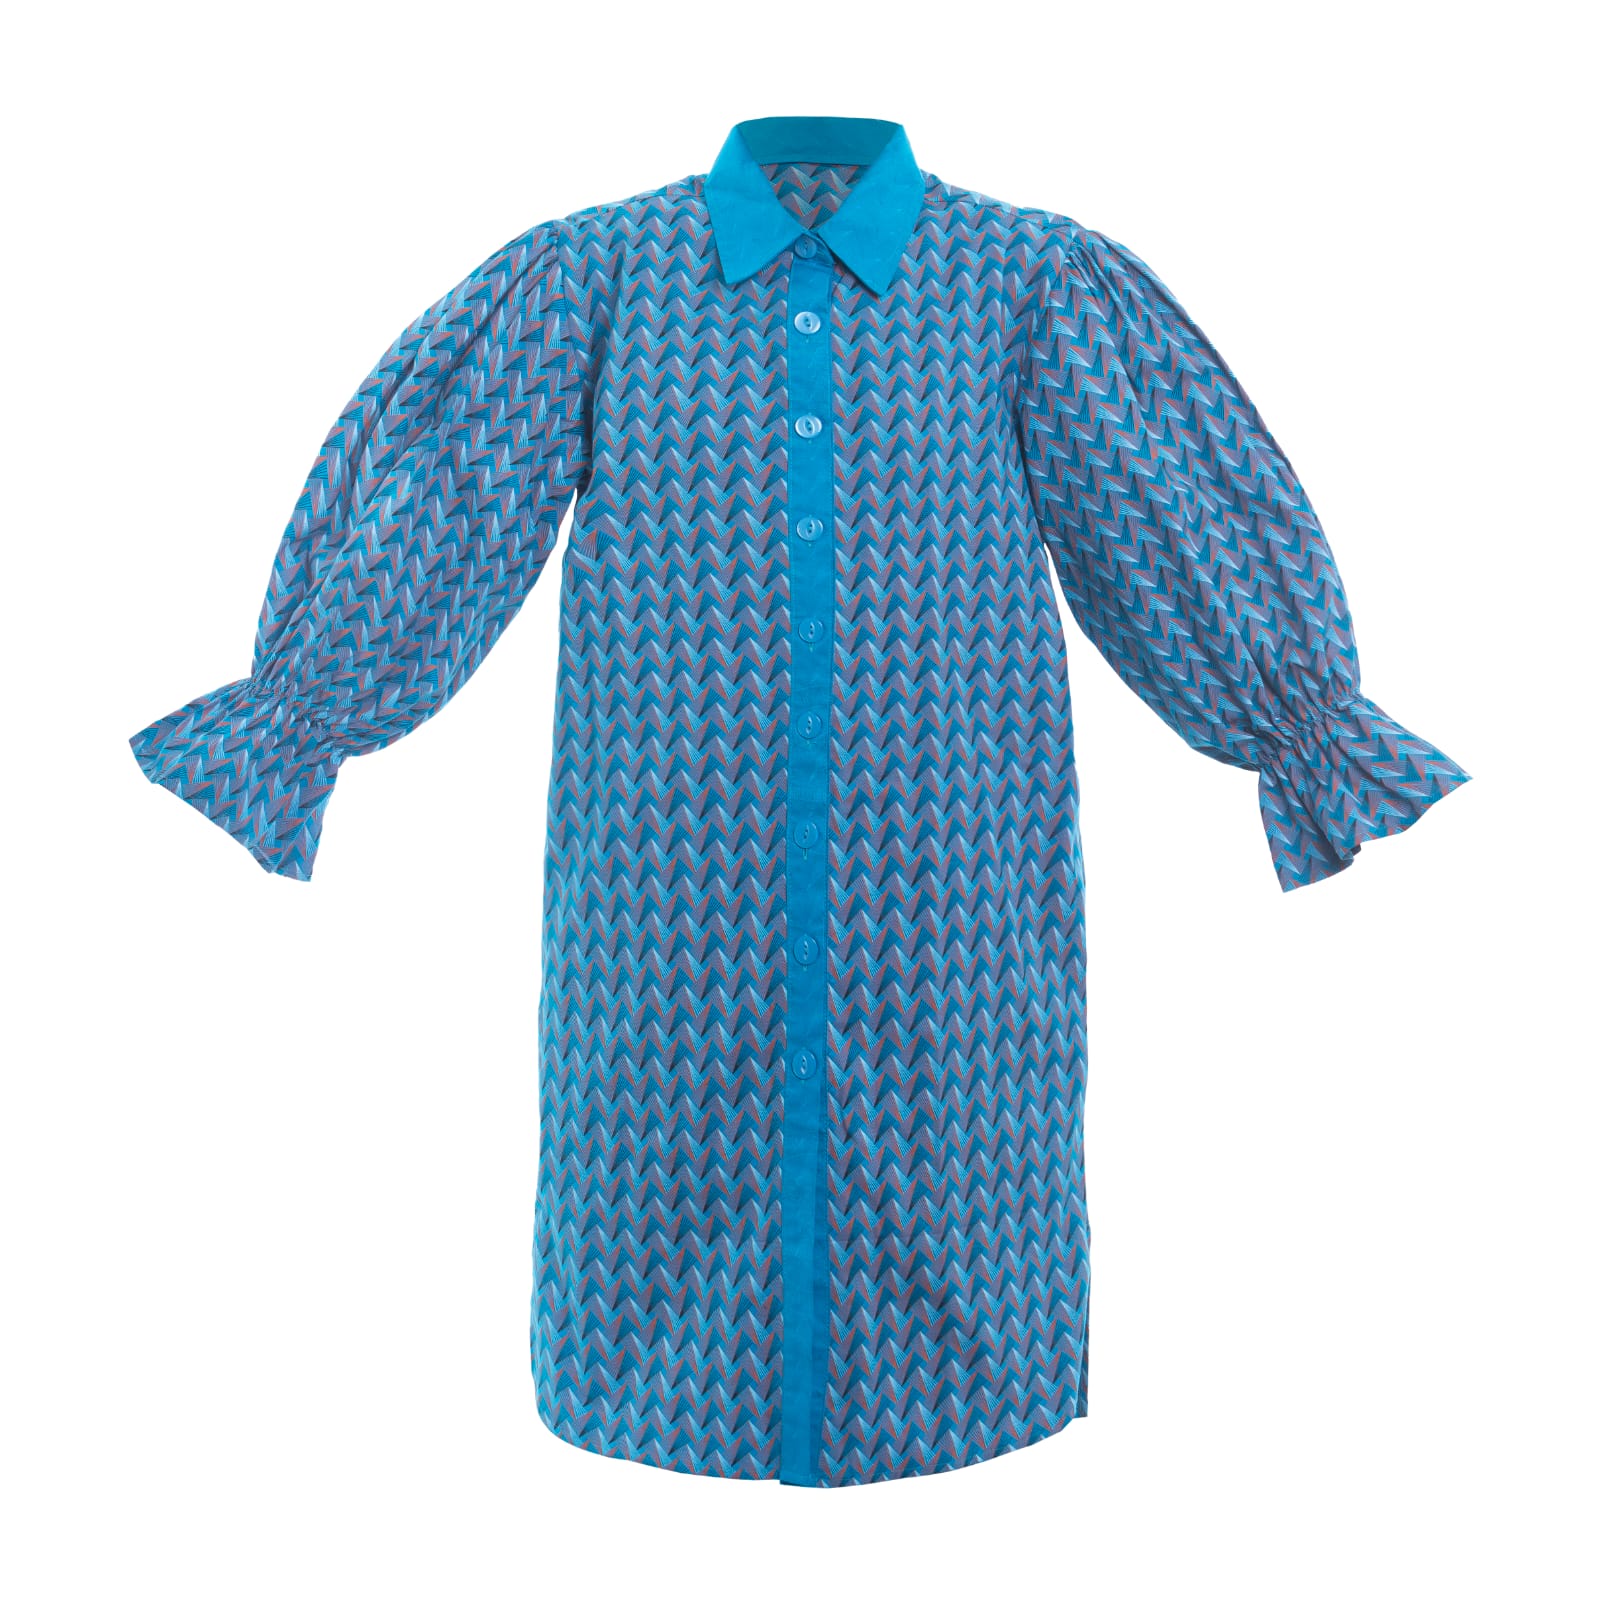 Shweshwe Puffed shirt dresses